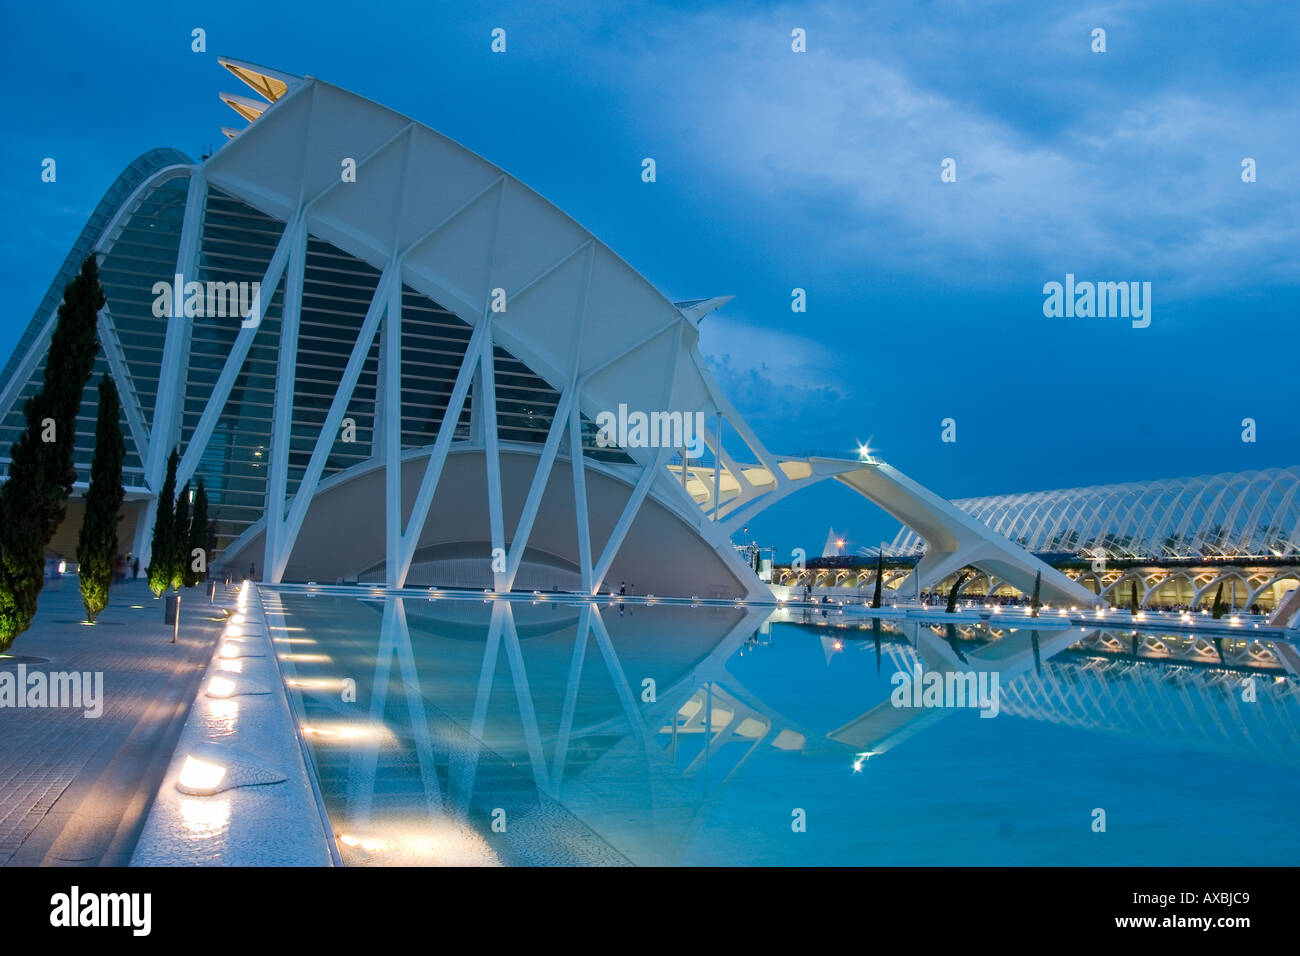 Spain Valencia City of sciences and arts by architect Santiago Calatrava twilight Stock Photo